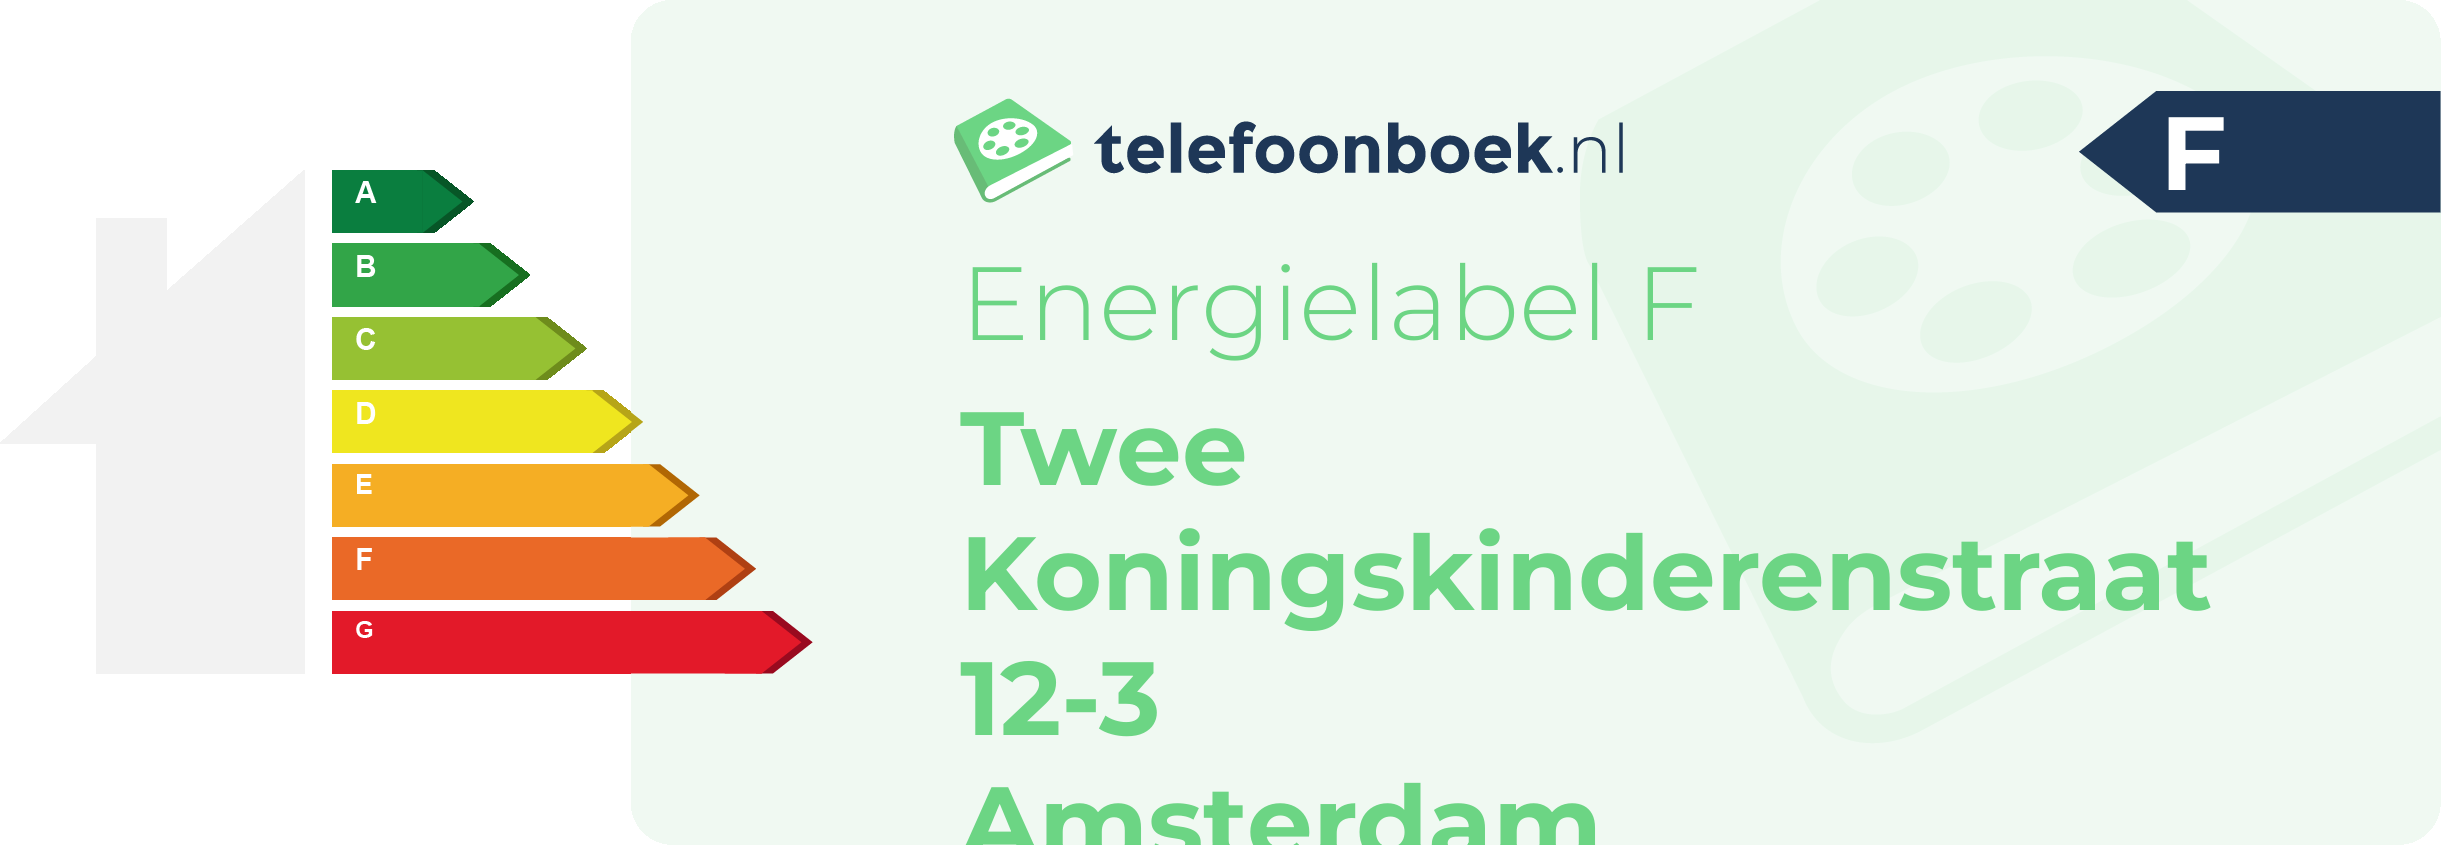 Energielabel Twee Koningskinderenstraat 12-3 Amsterdam